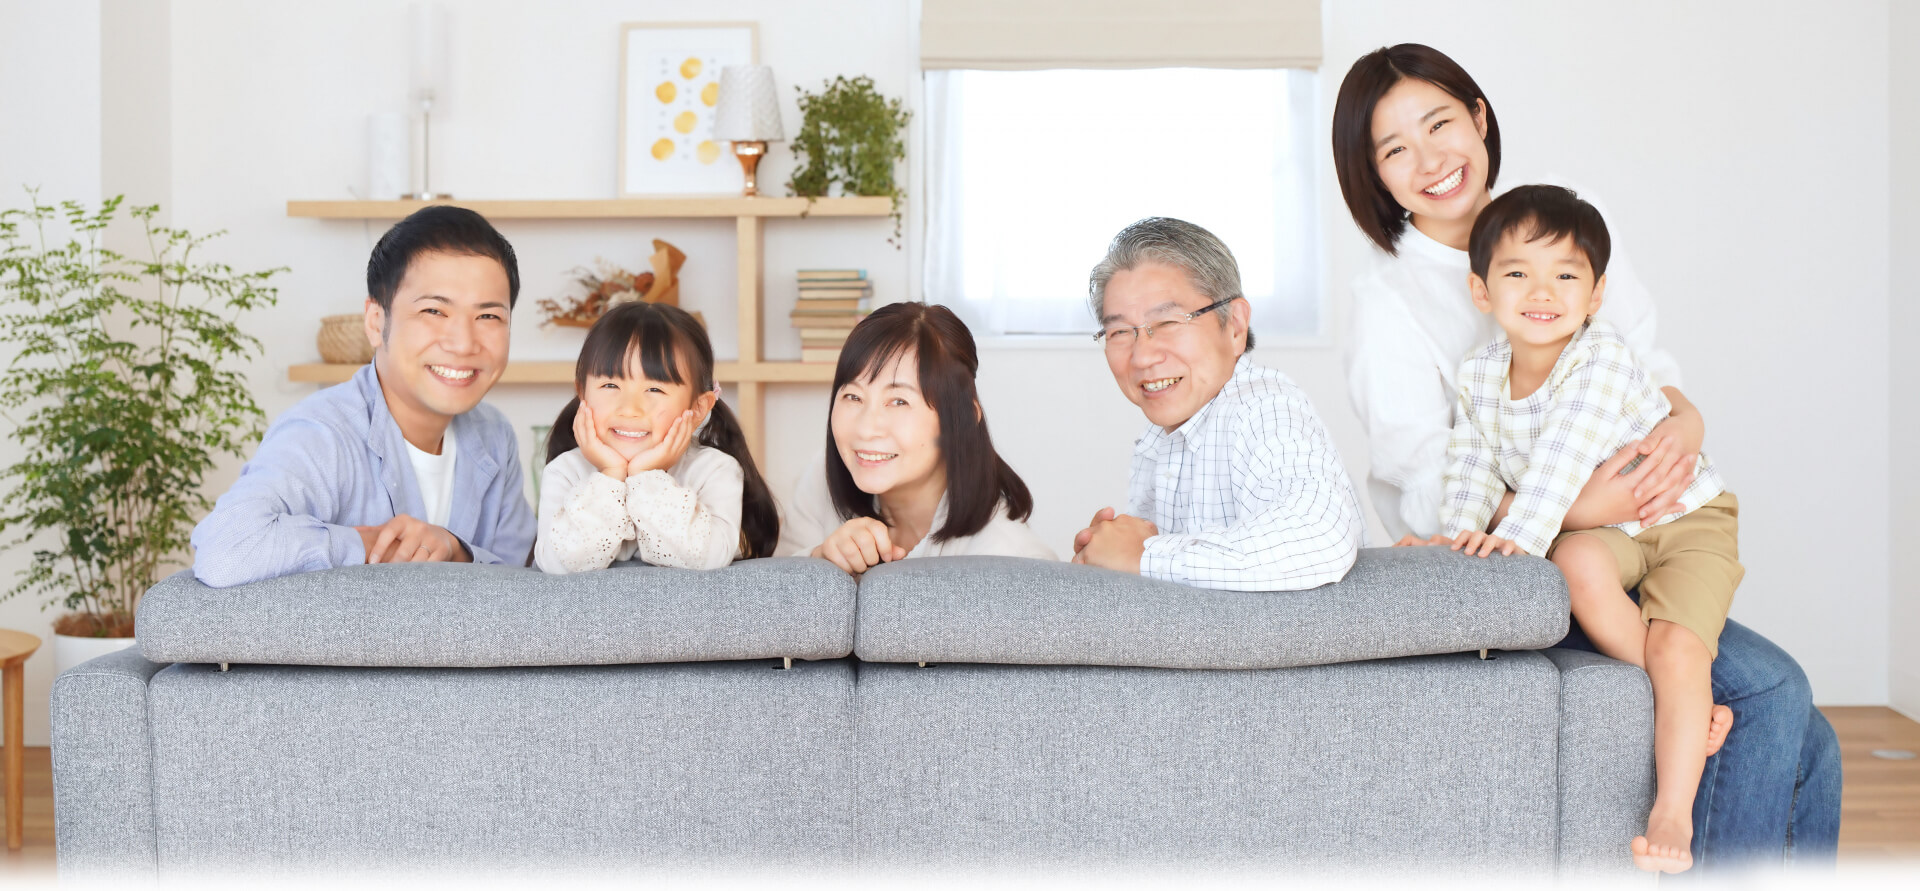 6人の家族がソファーに座り、振り向いてこちらを笑顔で見つめている写真